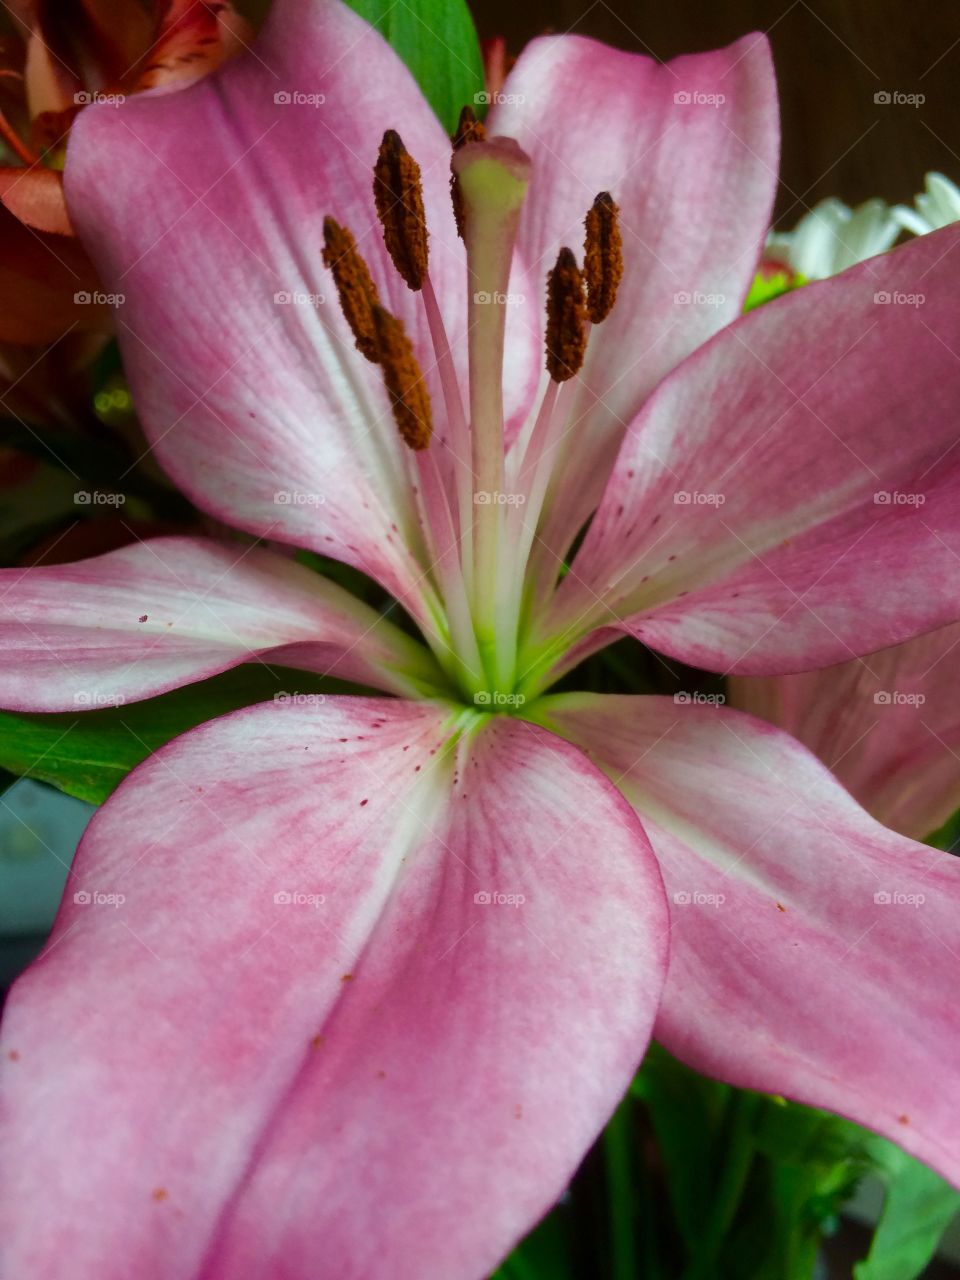 A lily closeup 